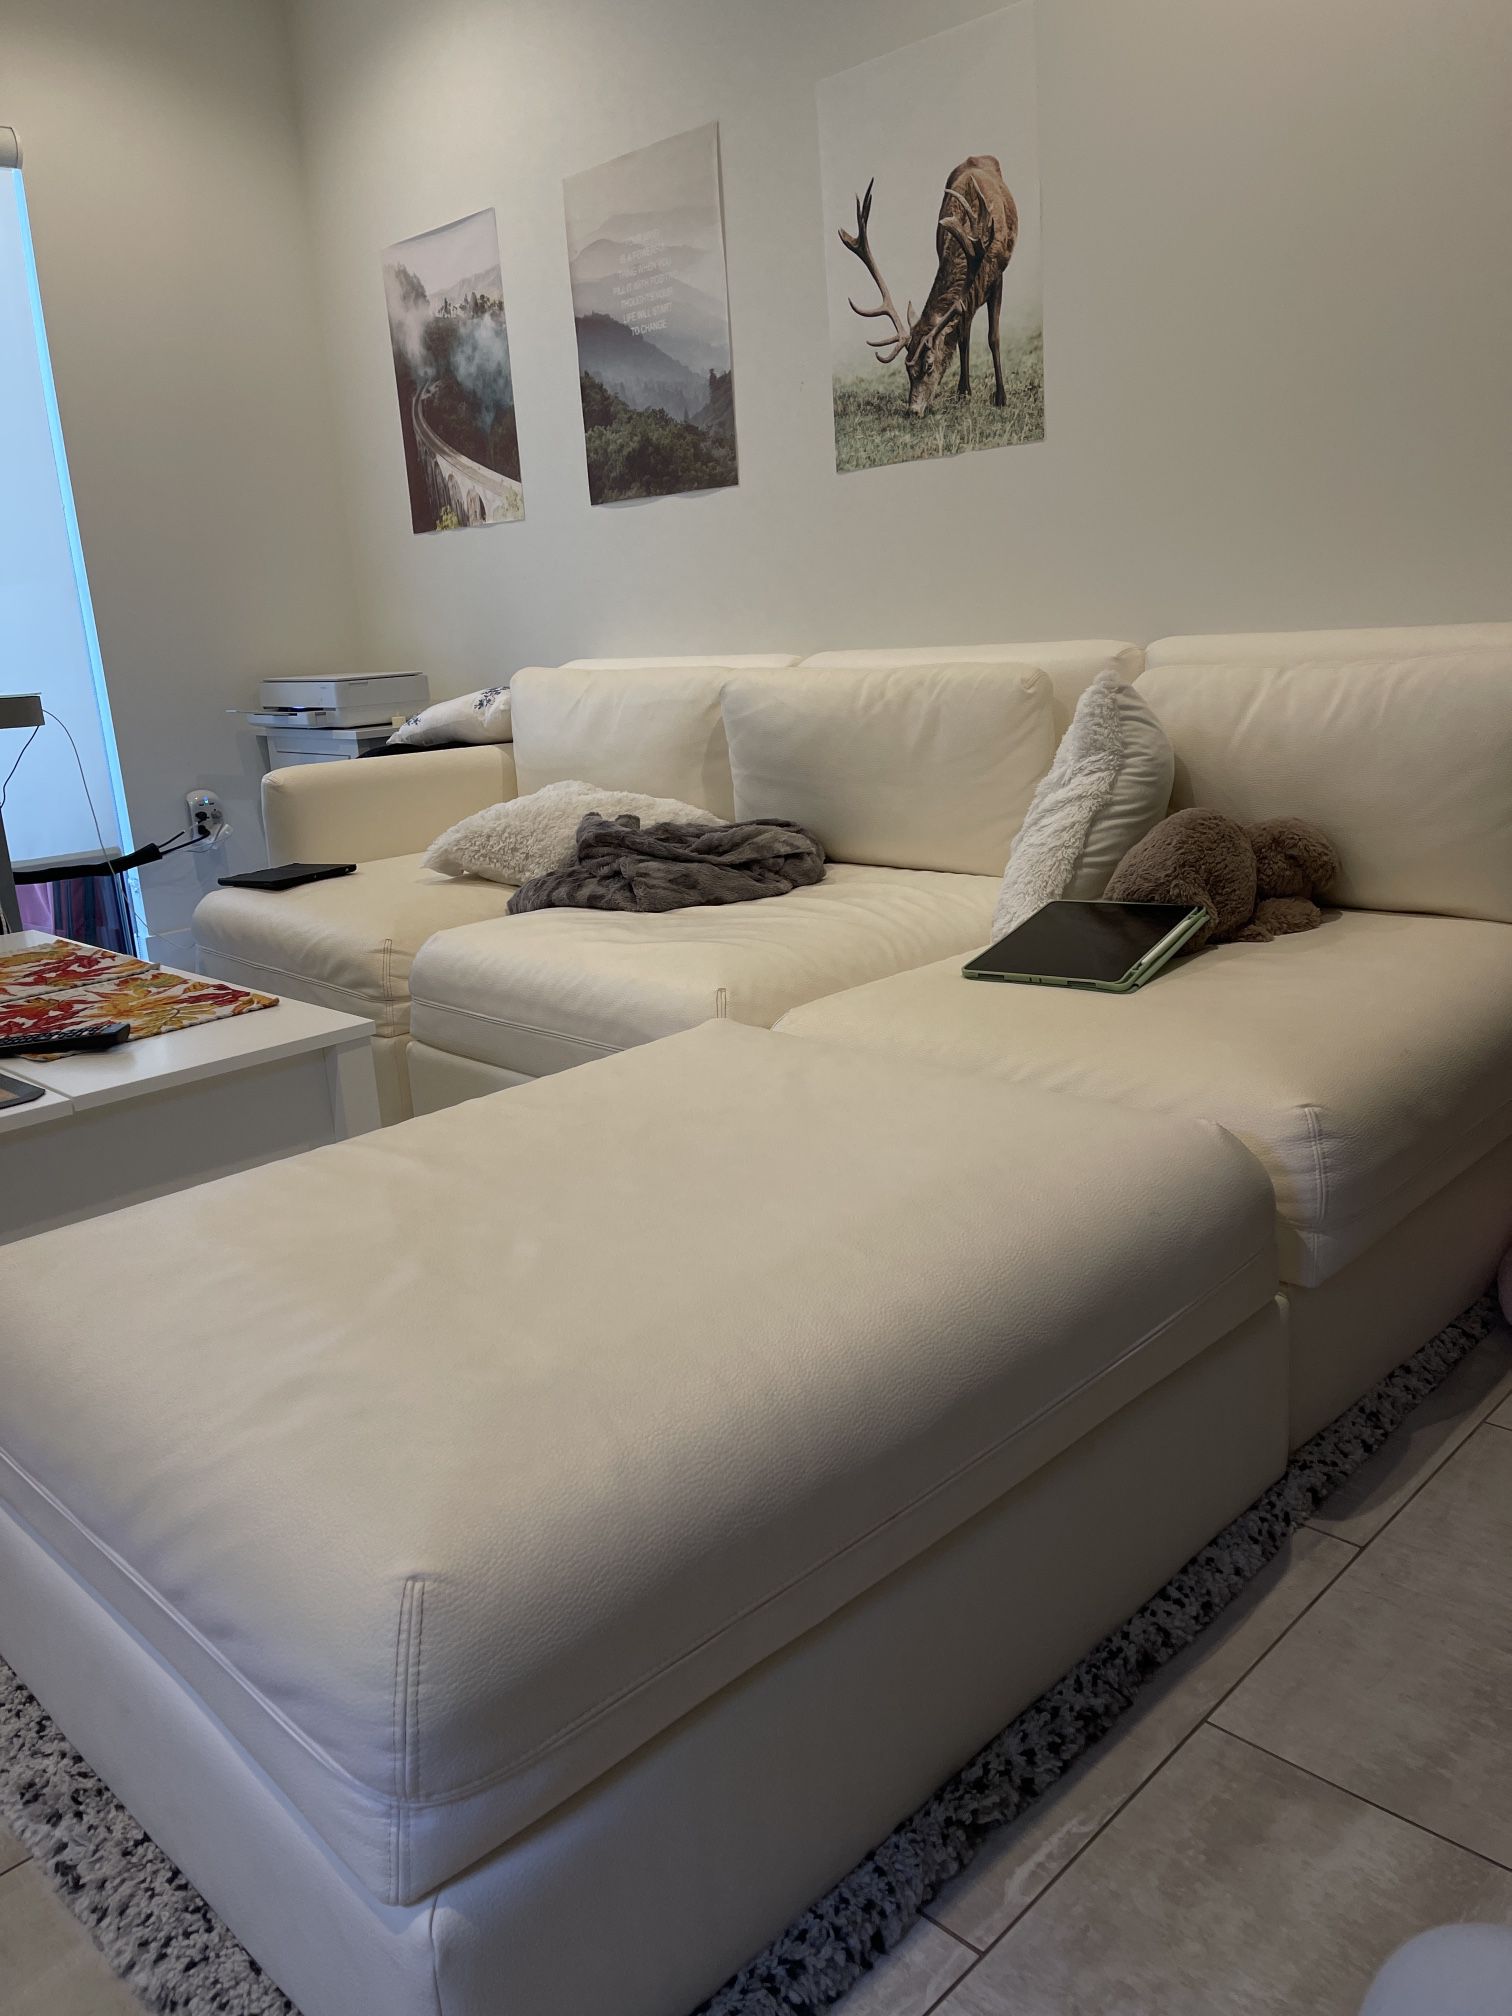 For Sale: IKEA Off-White Leather Sofa